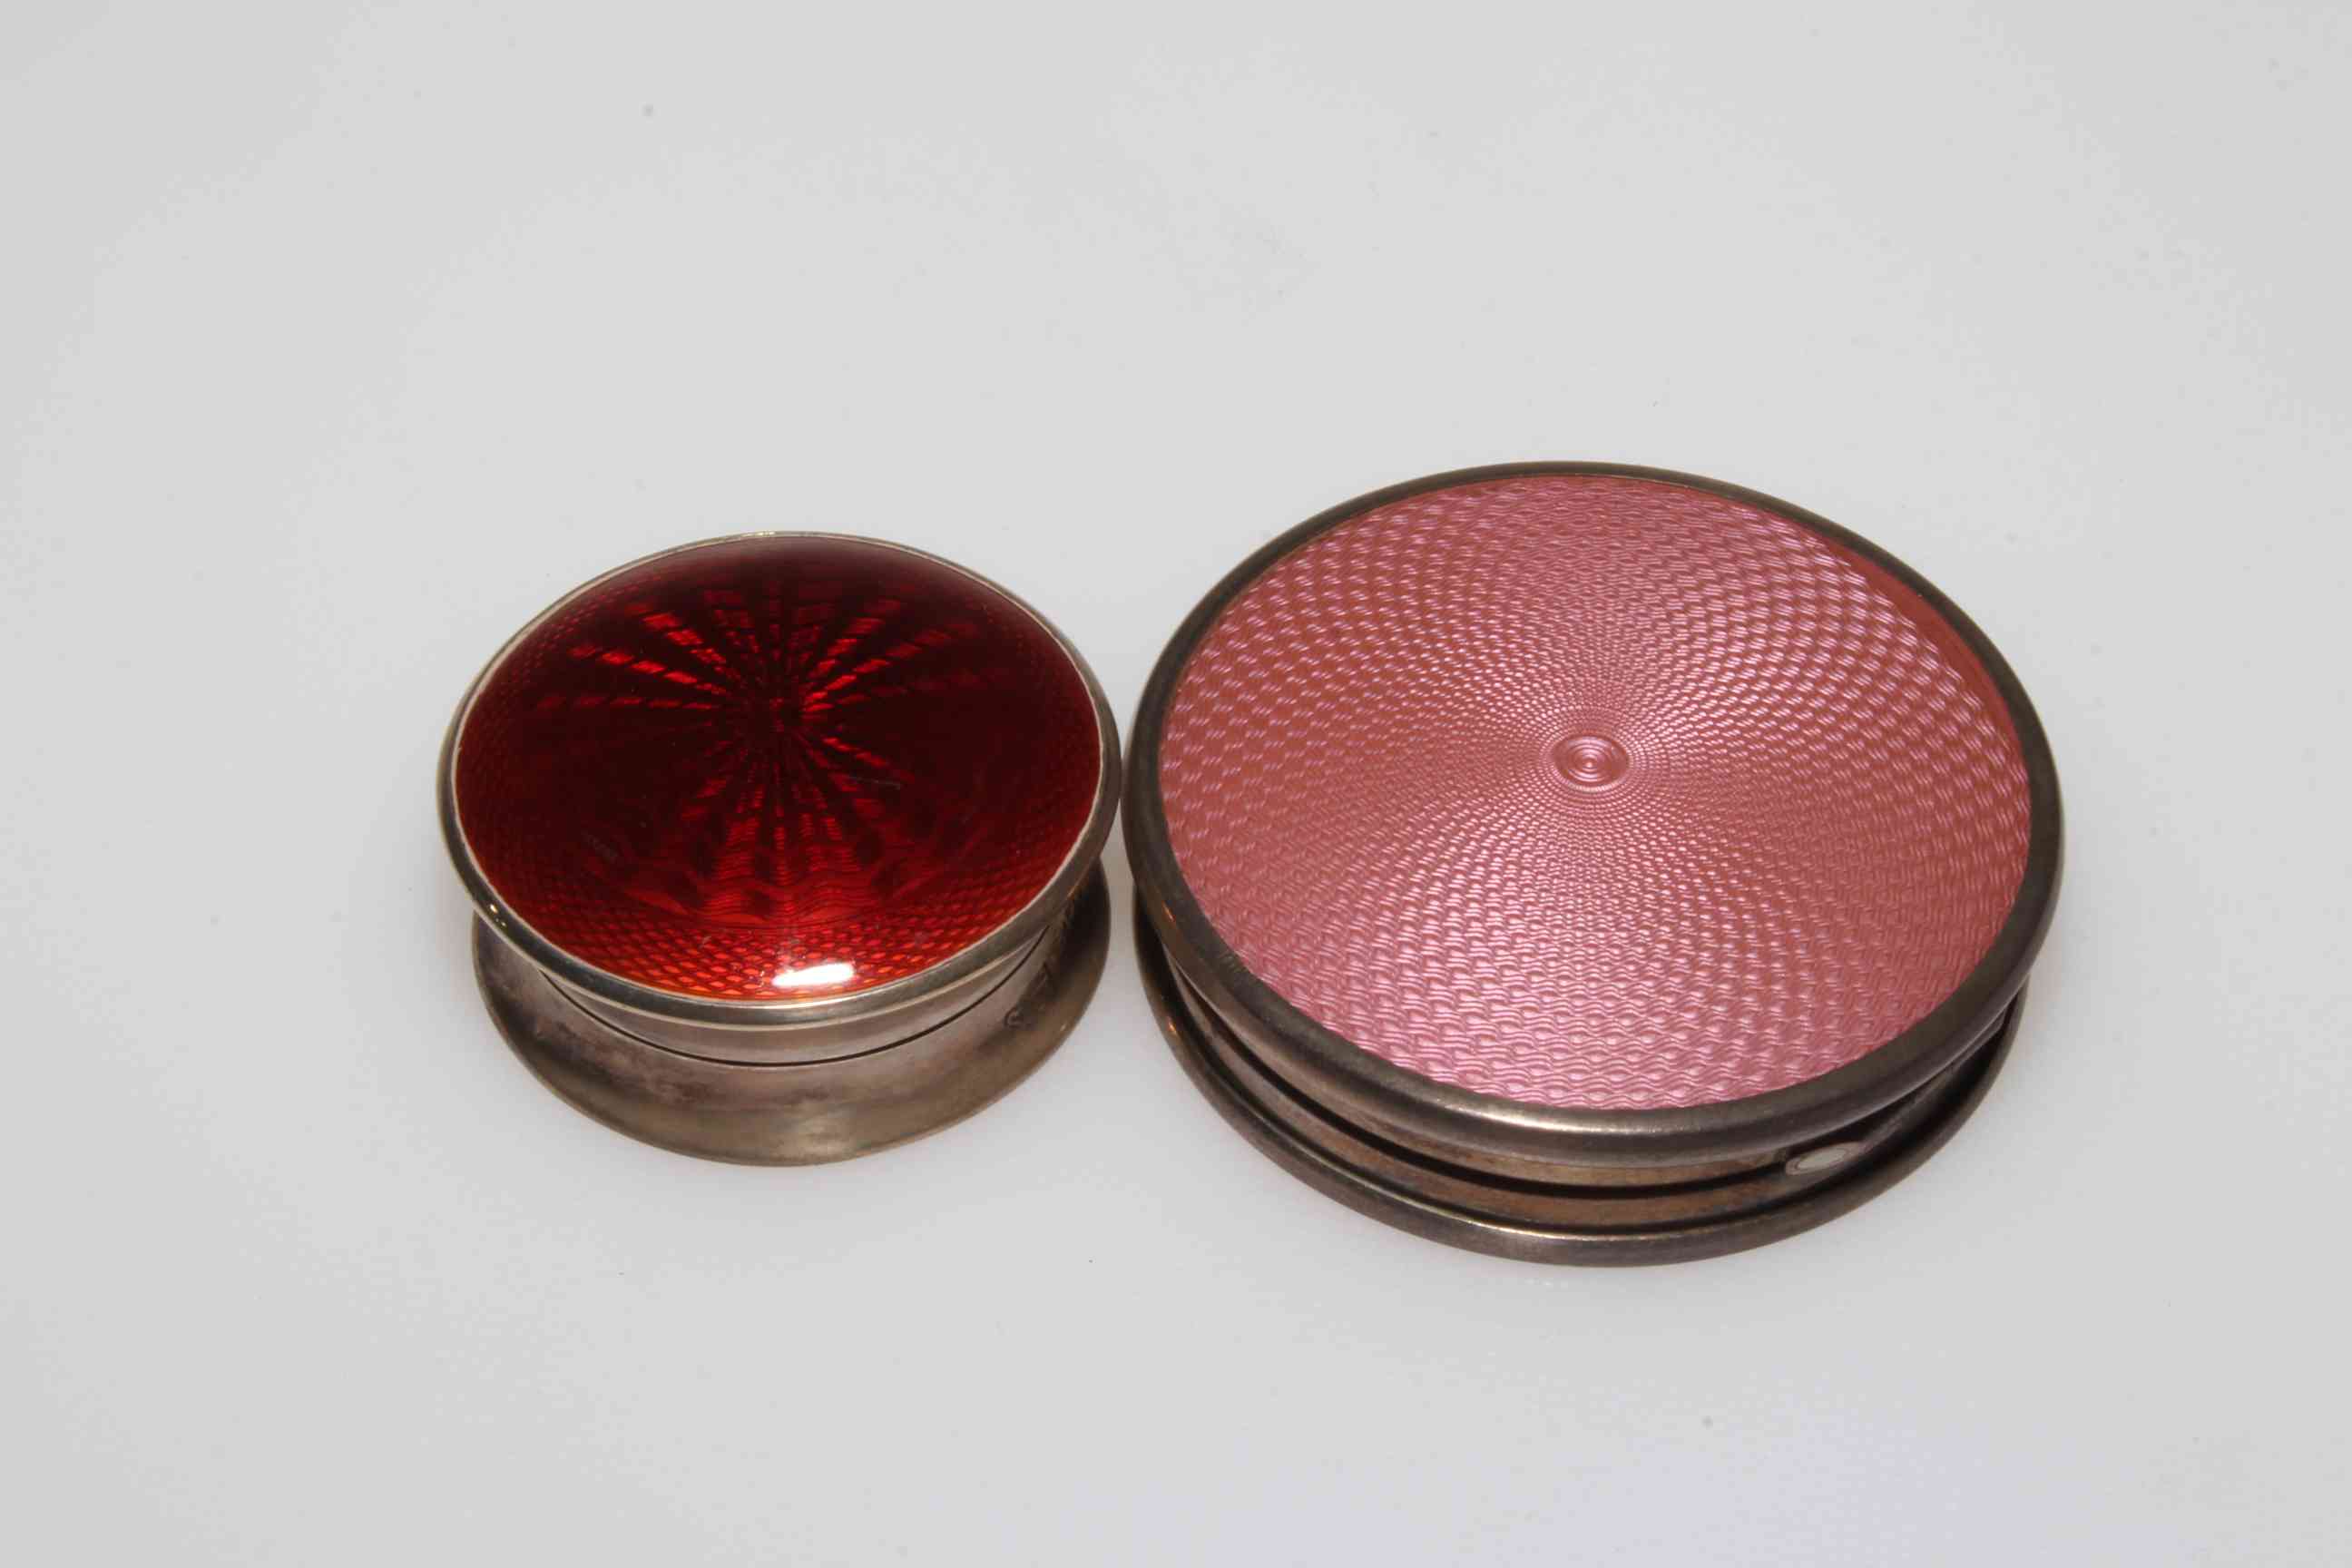 Silver and red enamel circular box 4cm diameter Birmingham 1926 and silver box Birmingham 1927 (2).